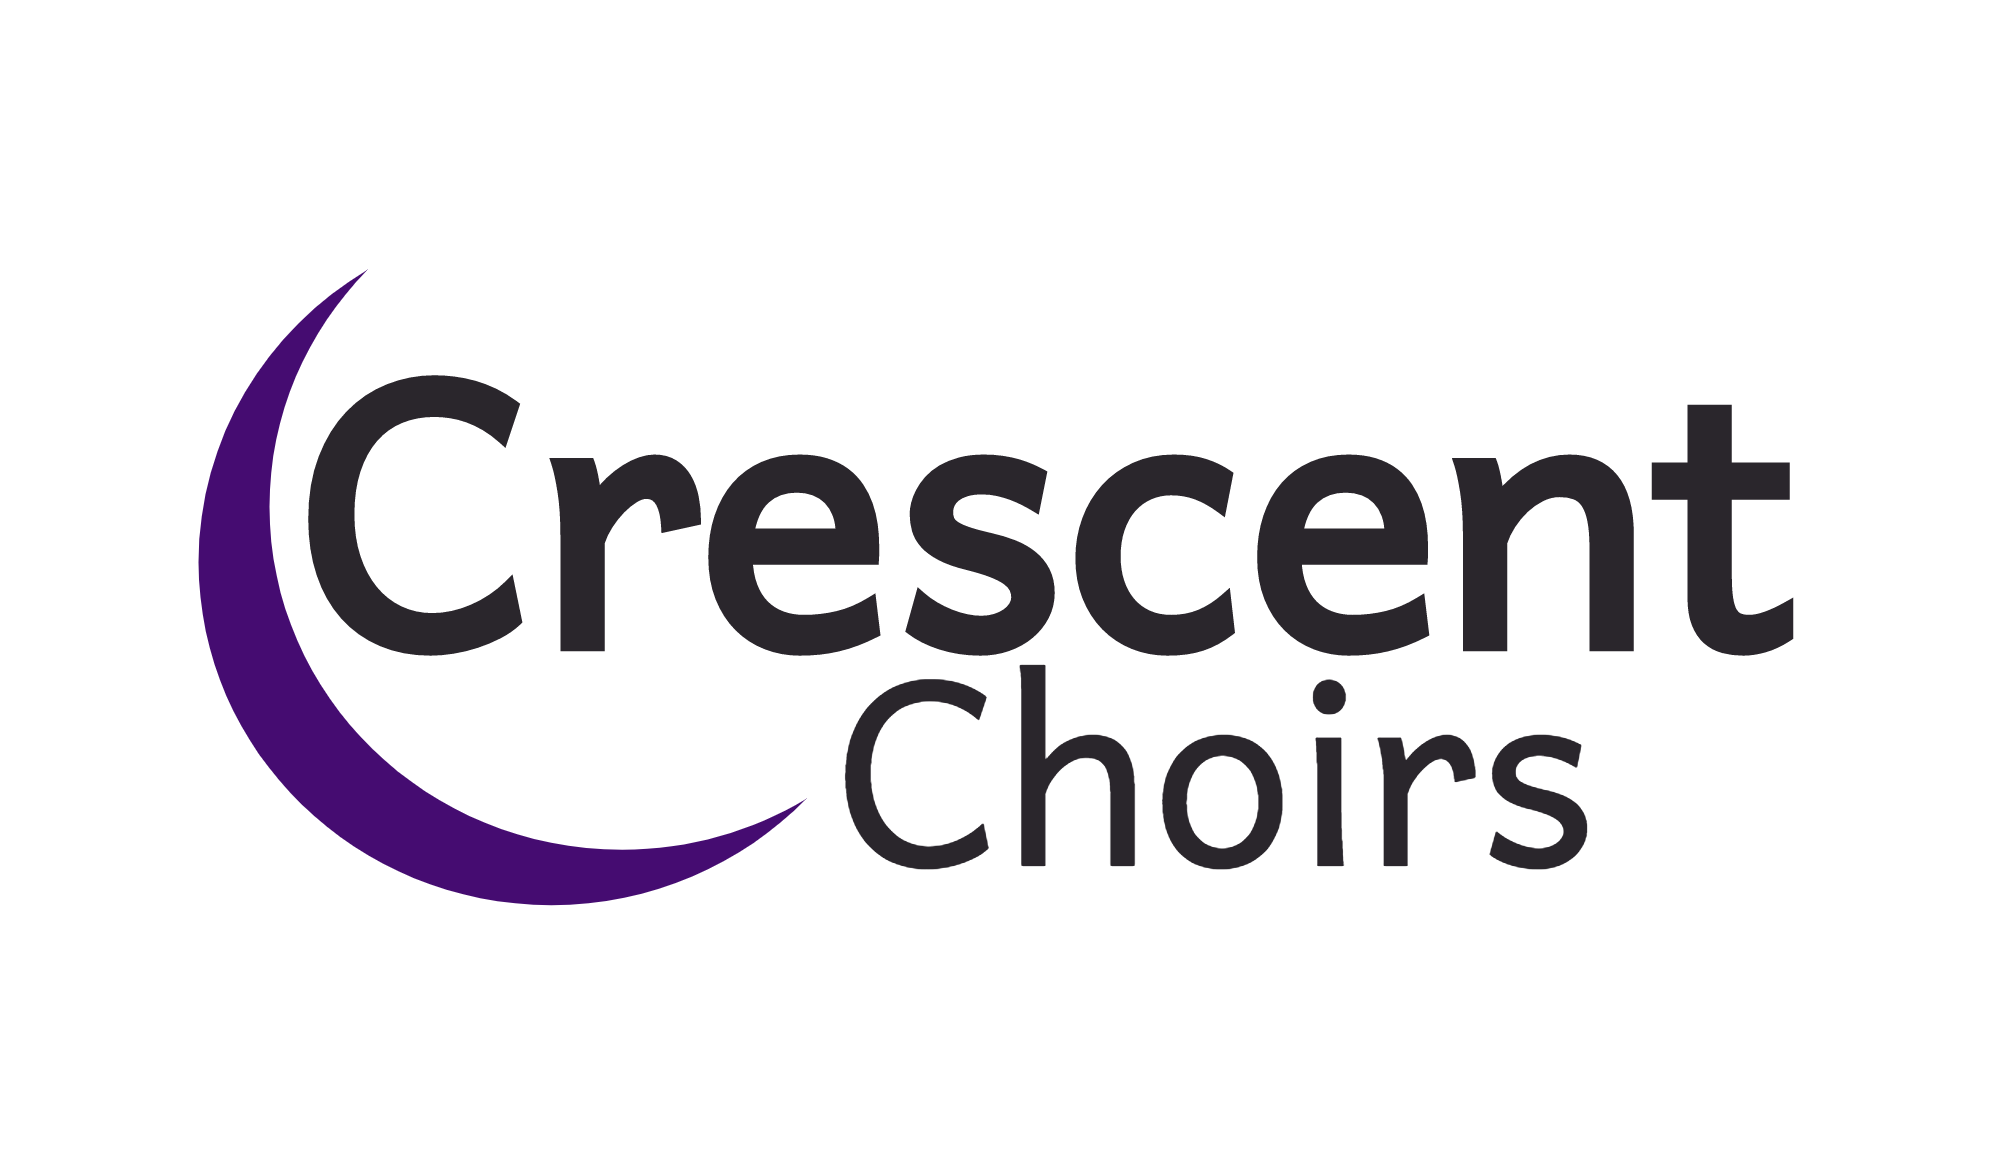 Crescent Choirs